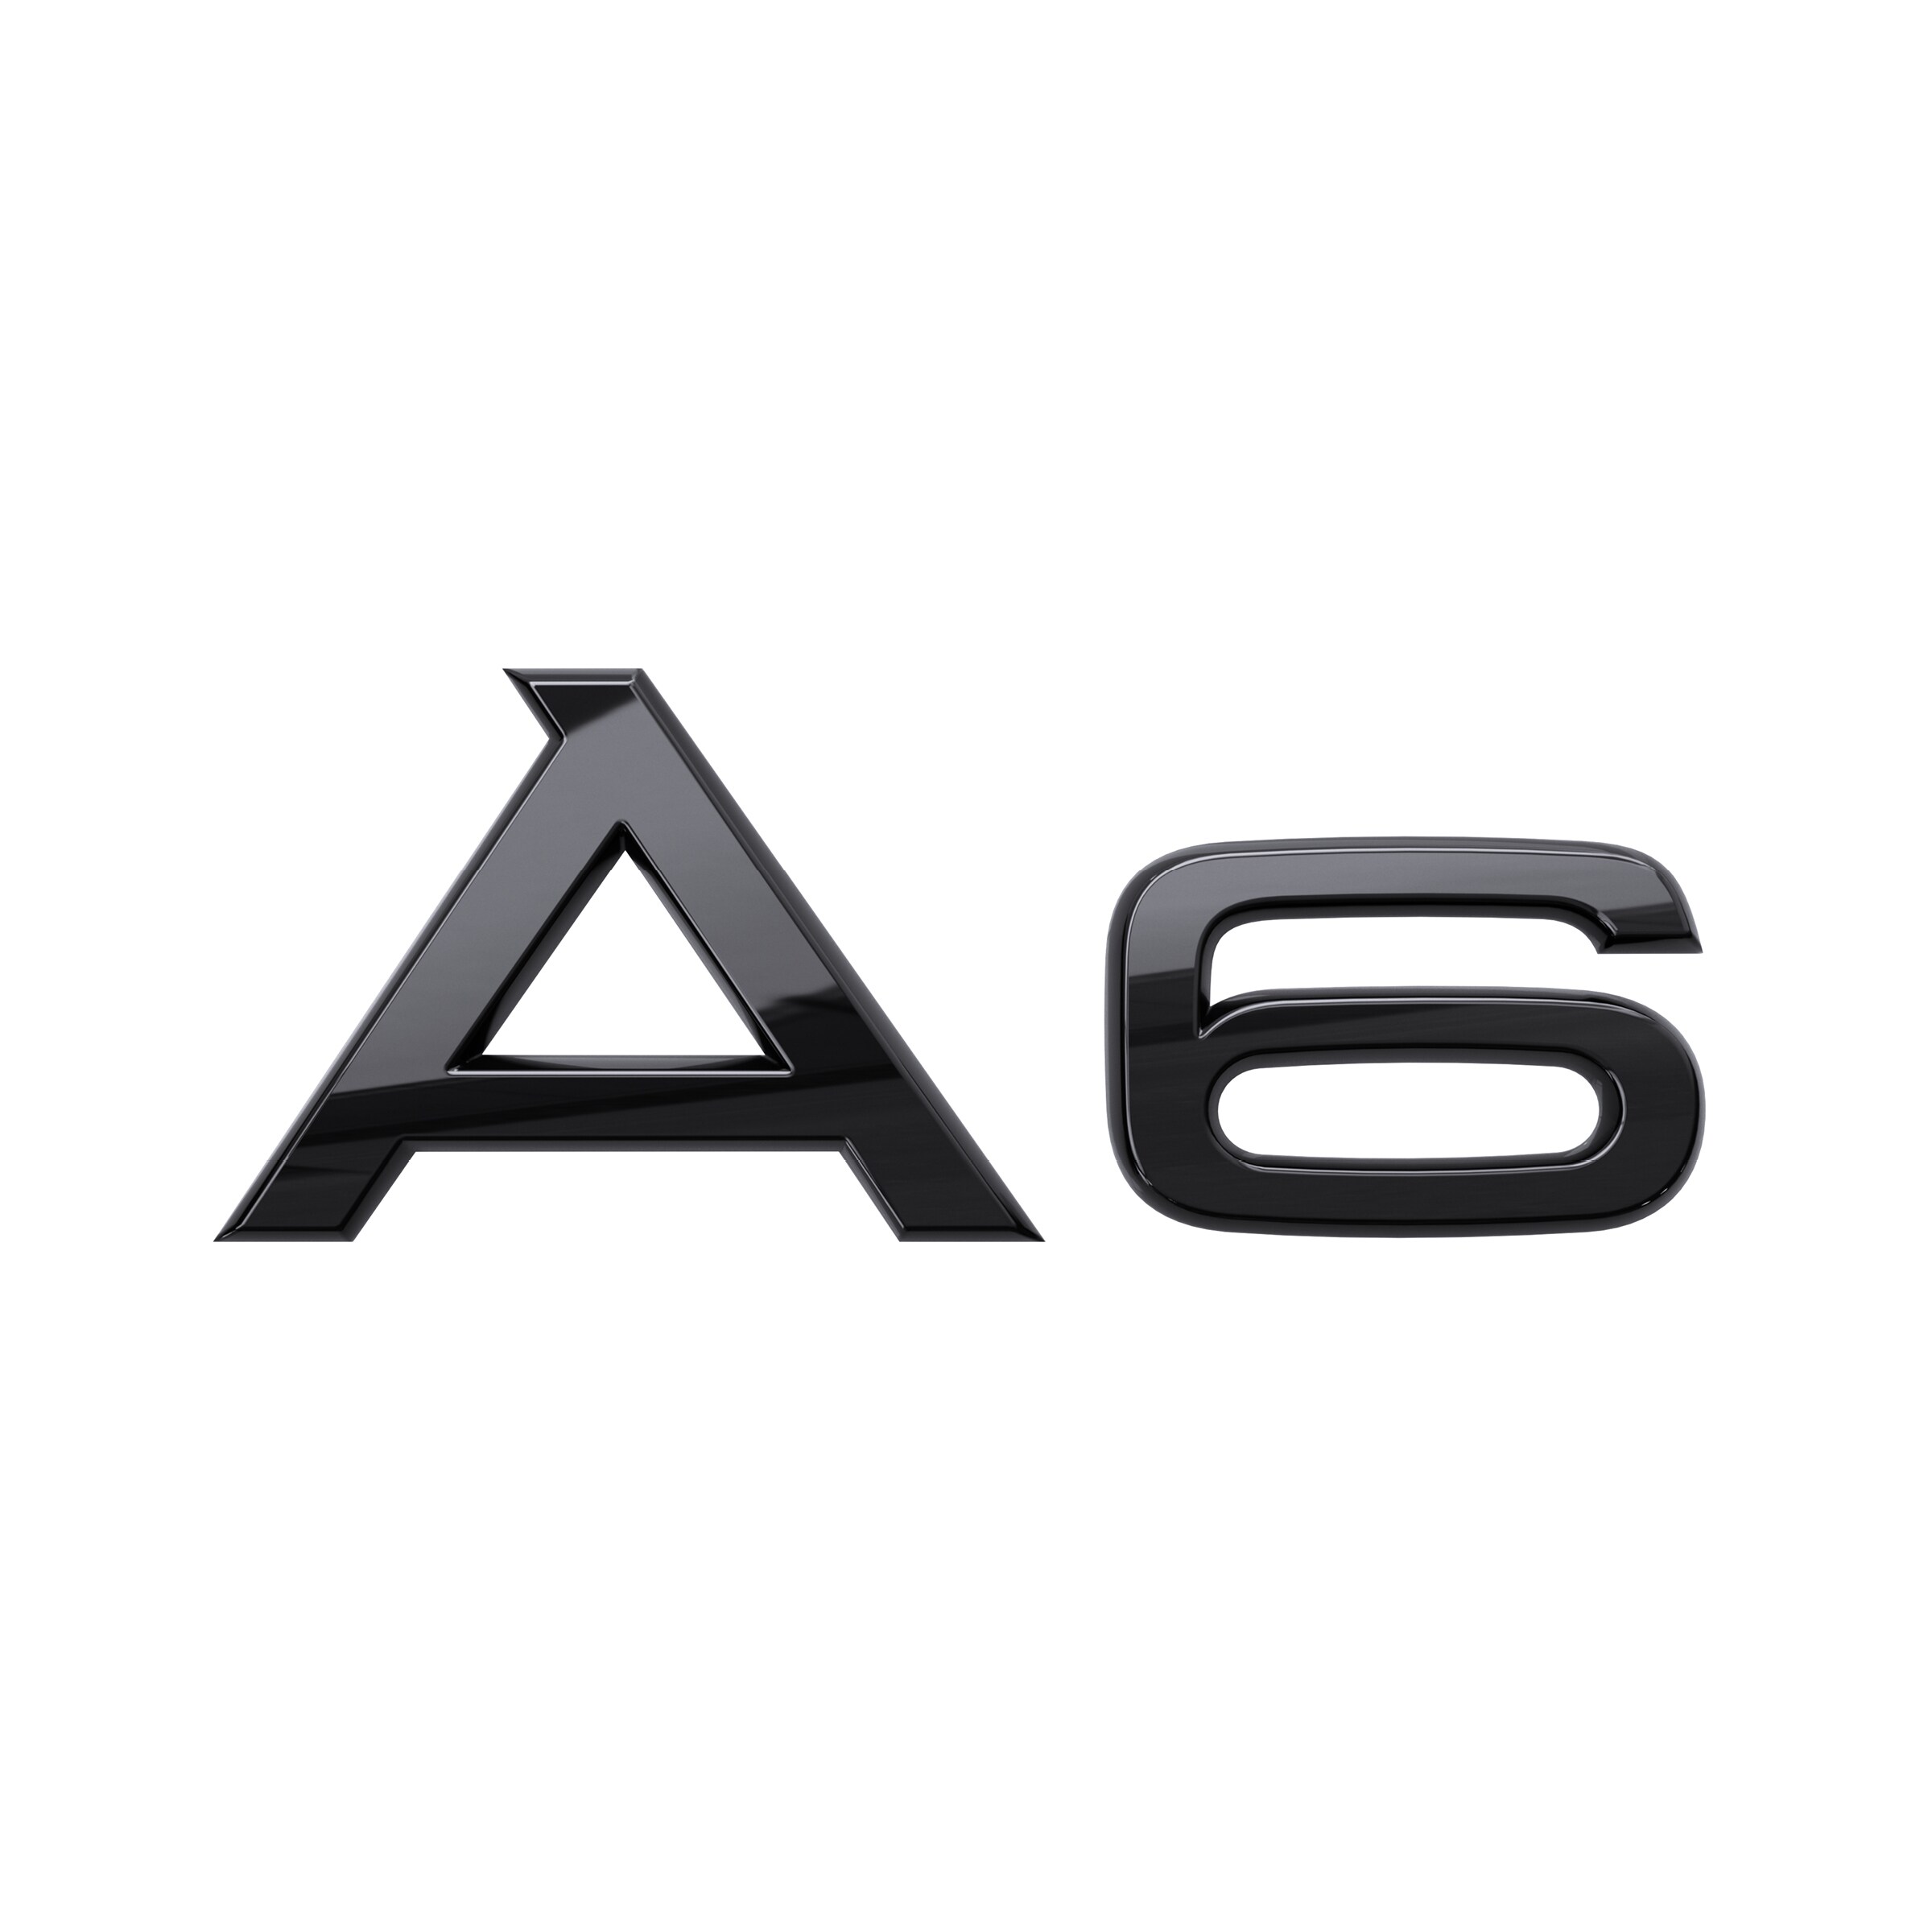 Modellbezeichnung A6 in Schwarz